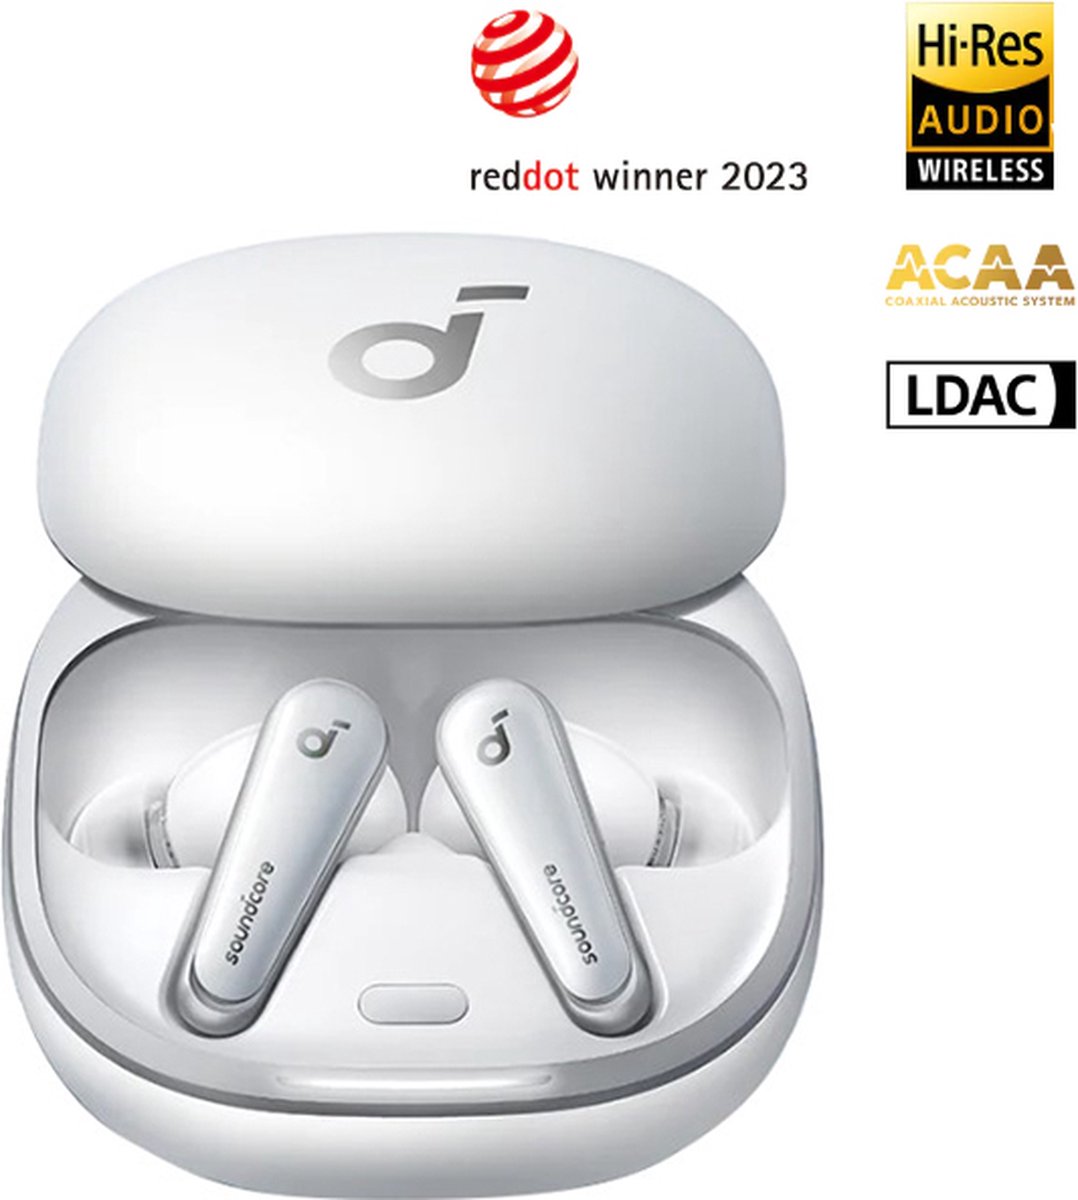 soundcore Liberty 4 - Prime auto-ruisonderdrukkende oordopjes wit- echt draadloze oordopjes met ACAA 3.0 - Dual Dynamic Drivers voor Hi-Res premium geluid - Spatial Audio met Dual Modes - Hartslagmeter